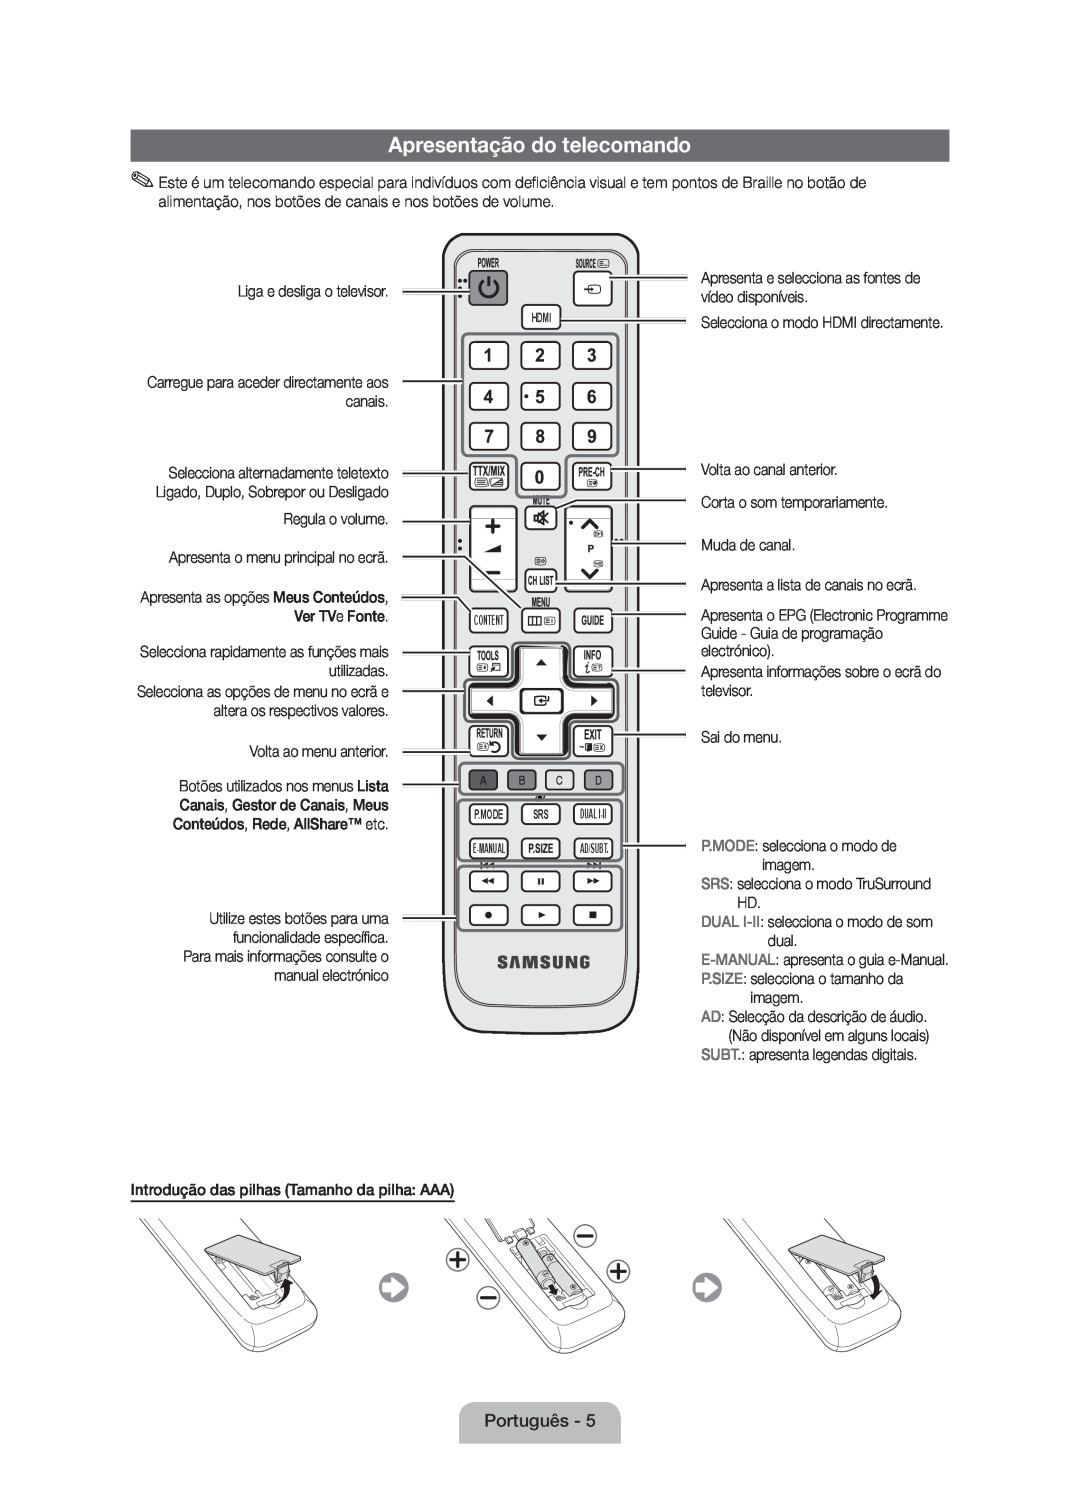 Samsung UE32D5000PWXXC, UE46D5000PWXZG manual Apresentação do telecomando, Apresenta as opções Meus Conteúdos, Ver TVe Fonte 